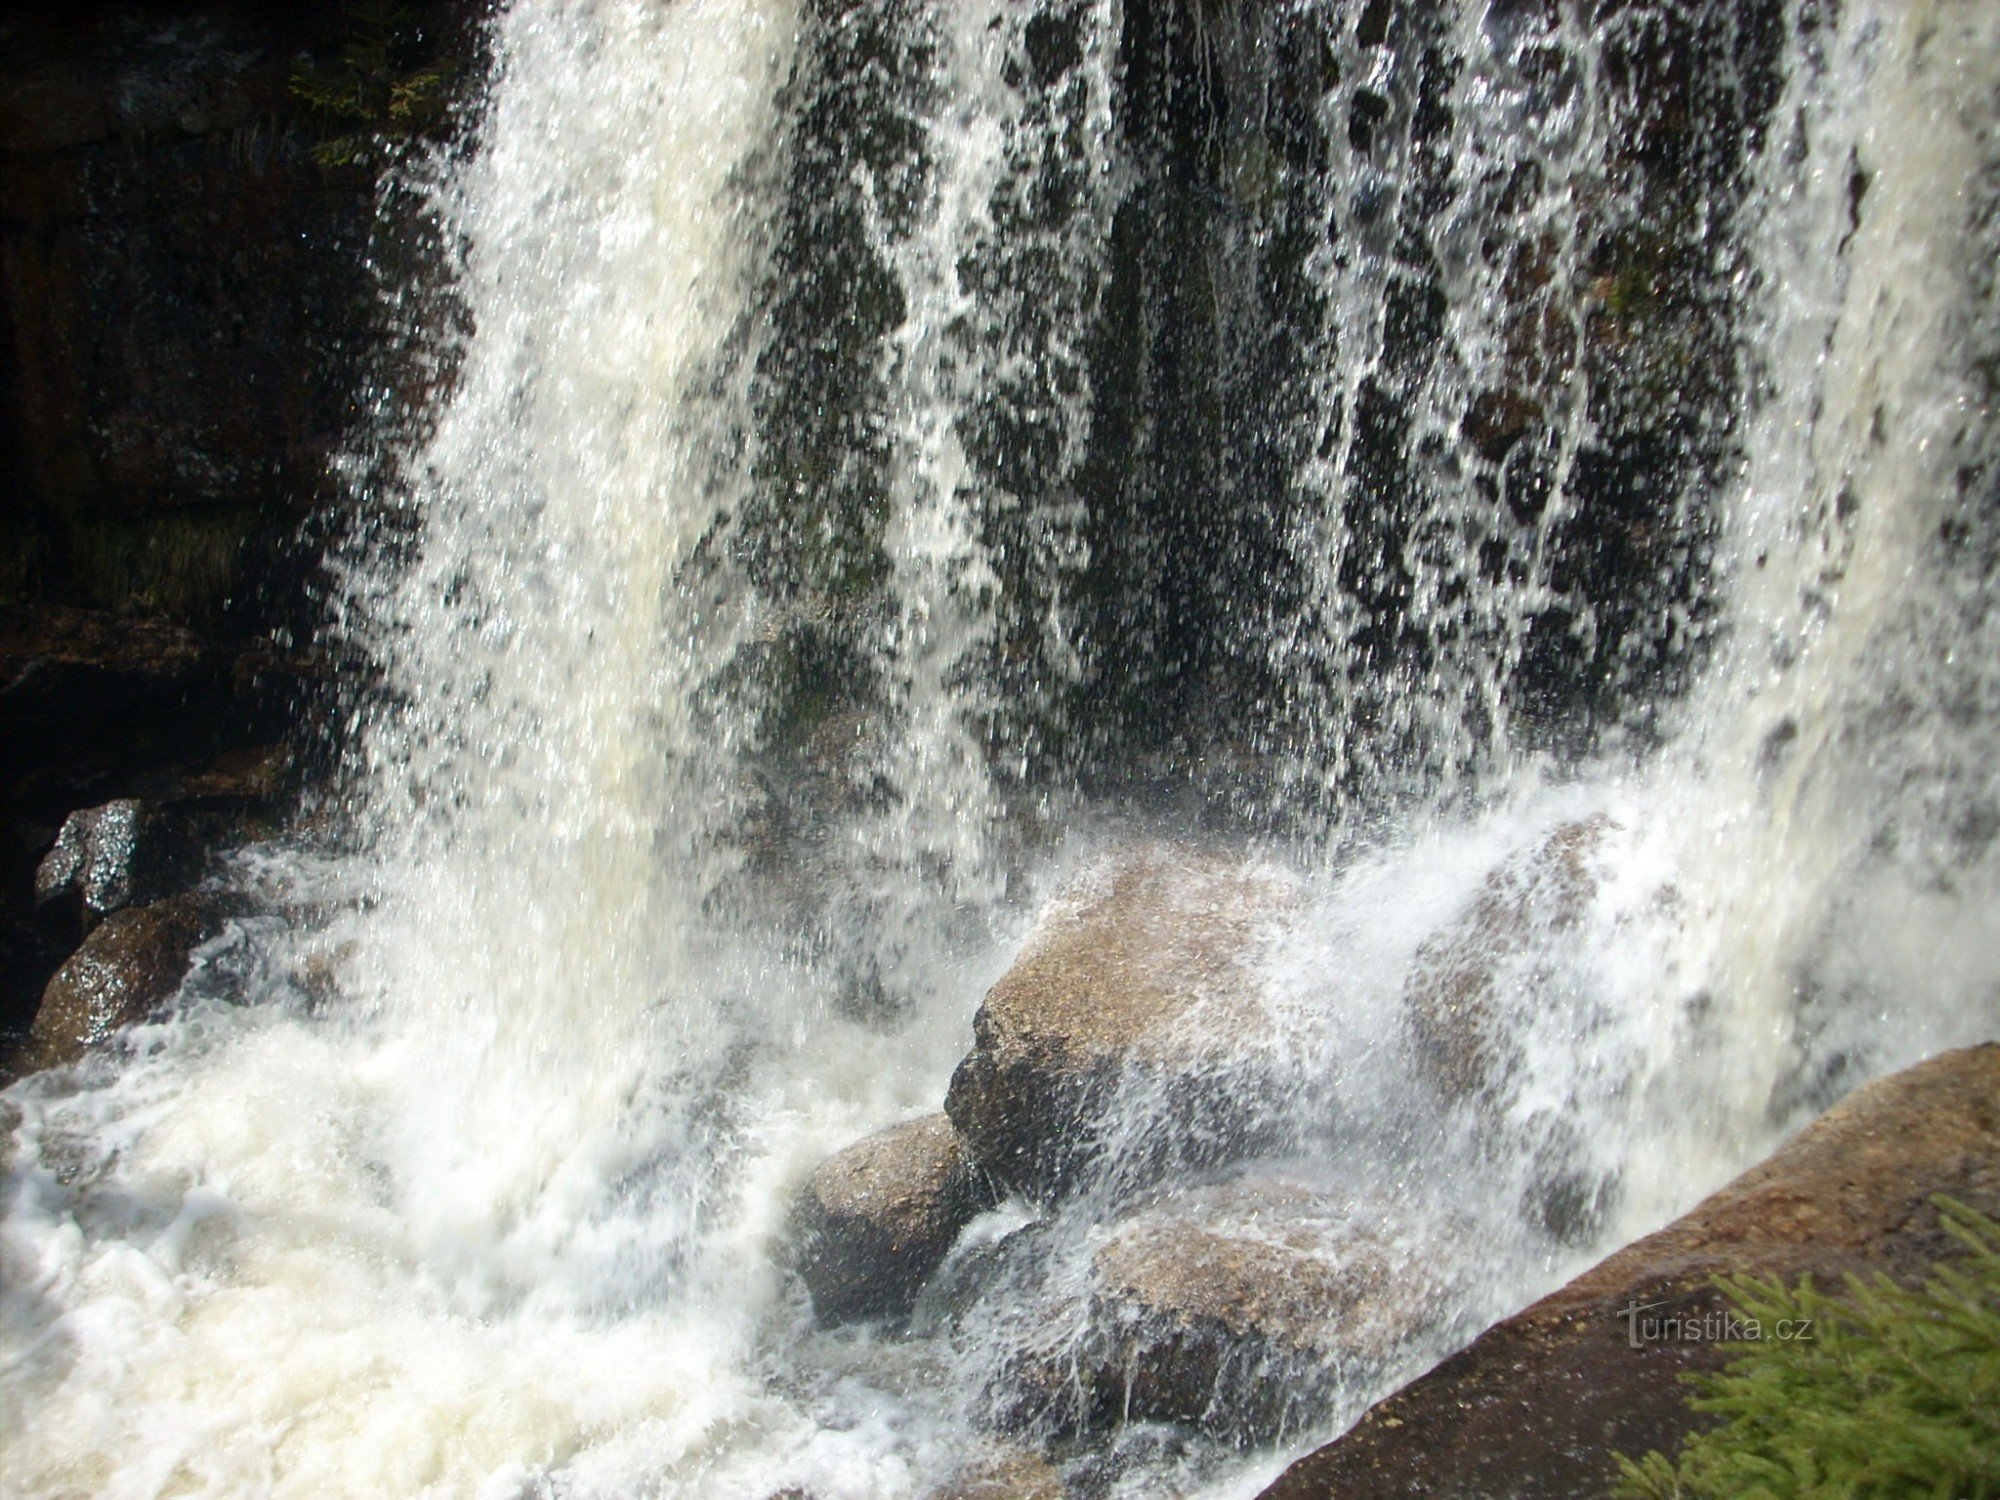 De grootste en mooiste waterval in het IJzergebergte - Jedlové watervallen